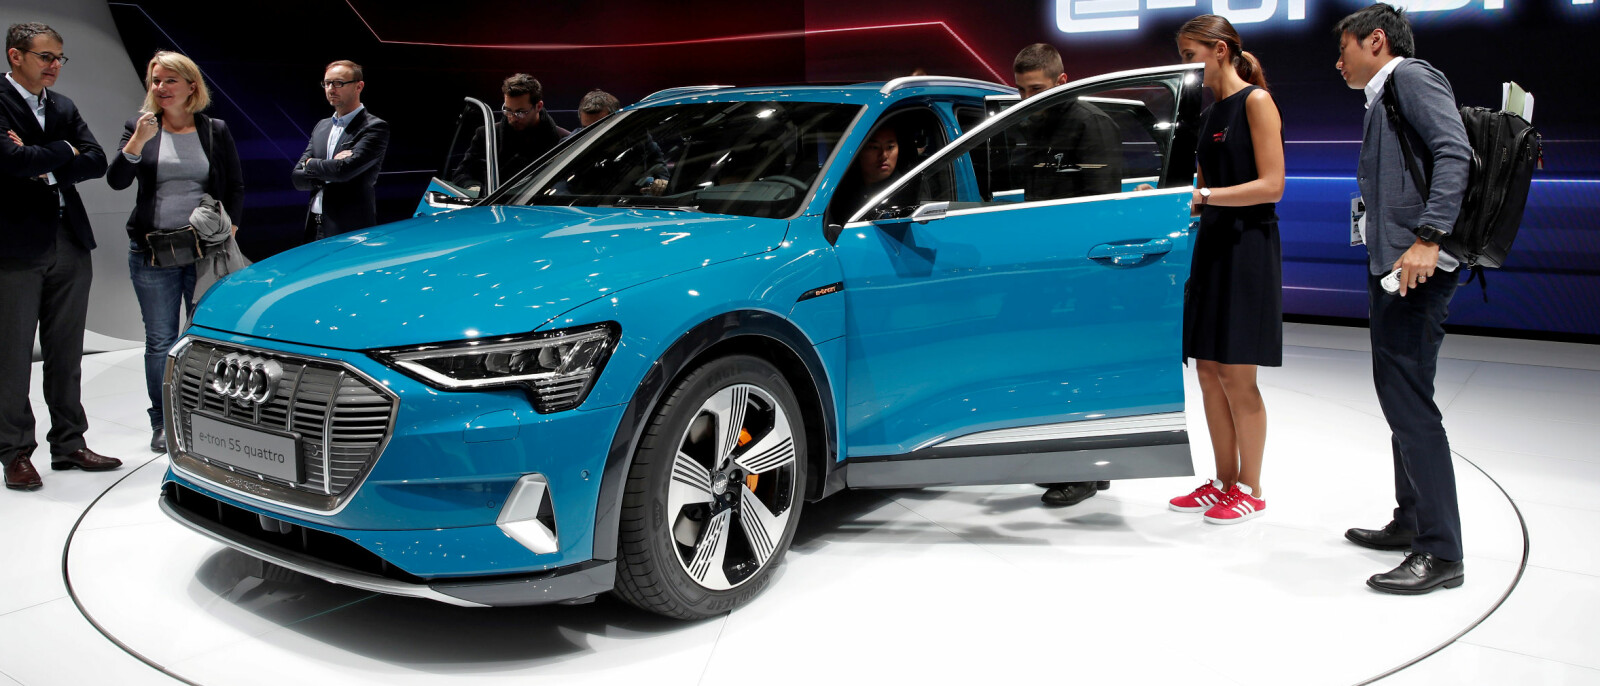 Interessen rundt Audi e-tron har vært enorm helt siden de første skissene som den over ble vist fram. Nå er det straks lansering i Norge.